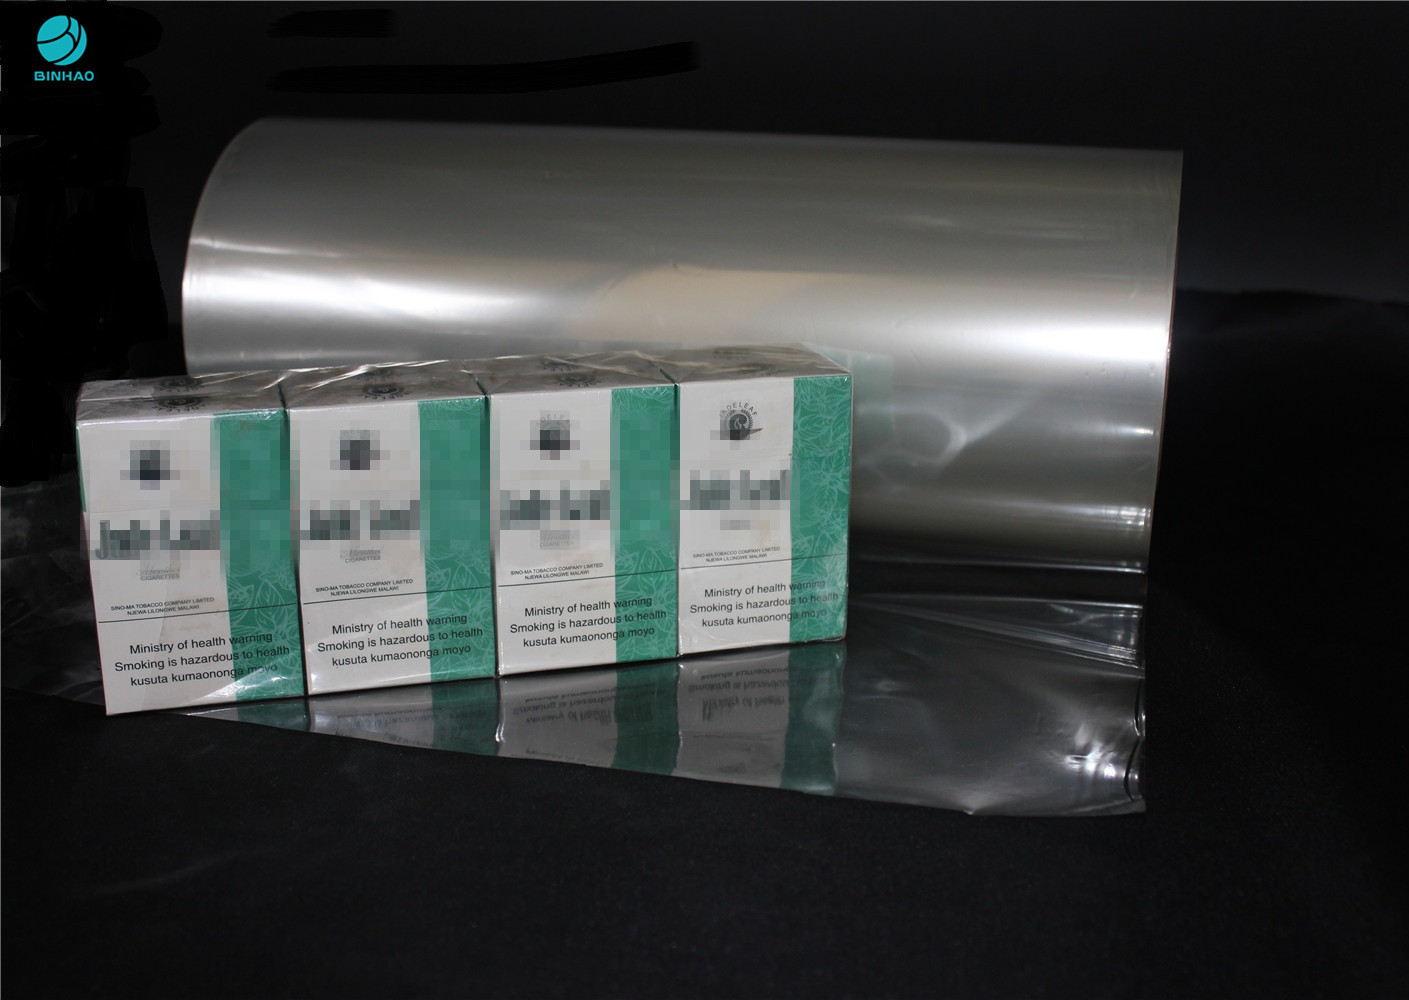 alta película del cloruro de polivinilo del PVC de la contracción de los 2000m para el acondicionamiento de los alimentos y la caja del cigarrillo